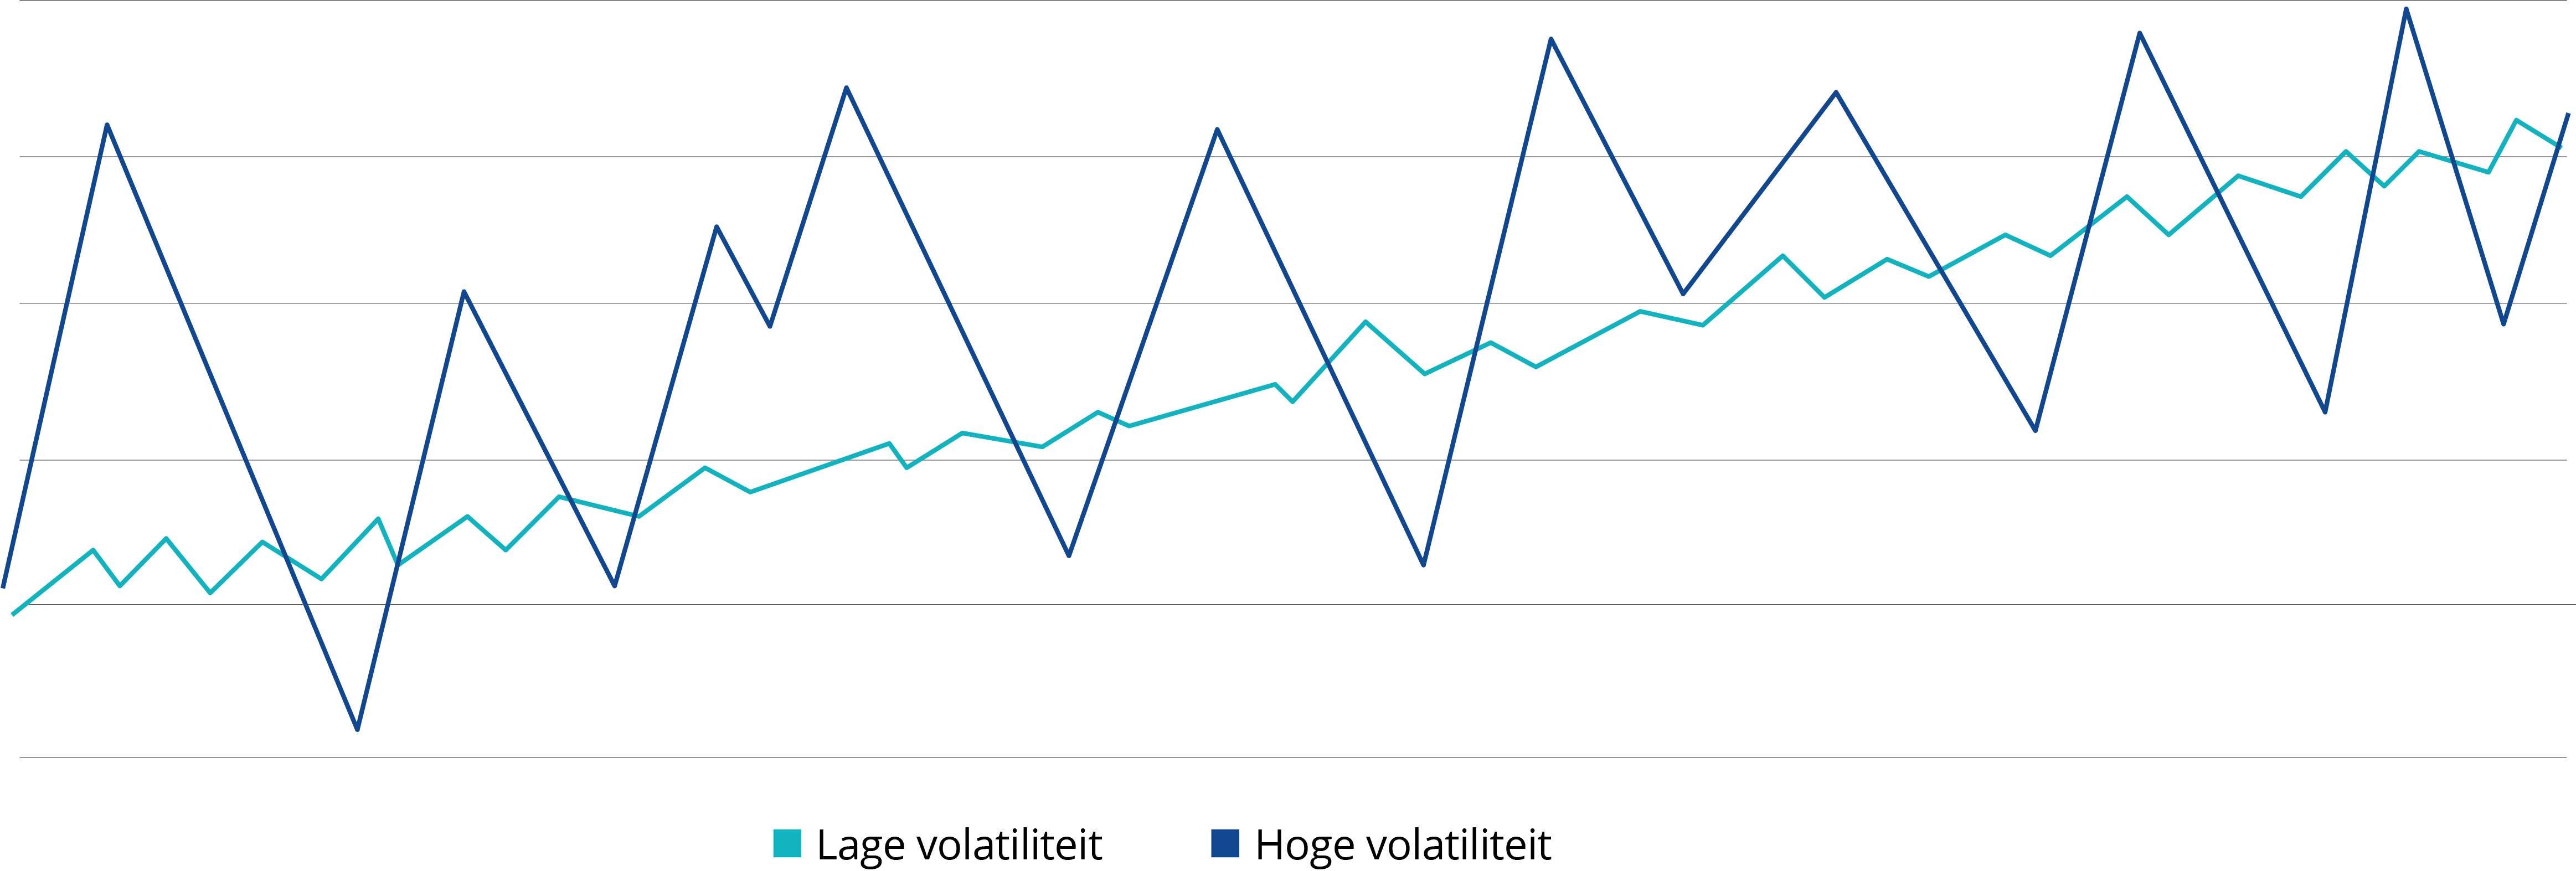 Volatiliteit van beleggingscategorieën